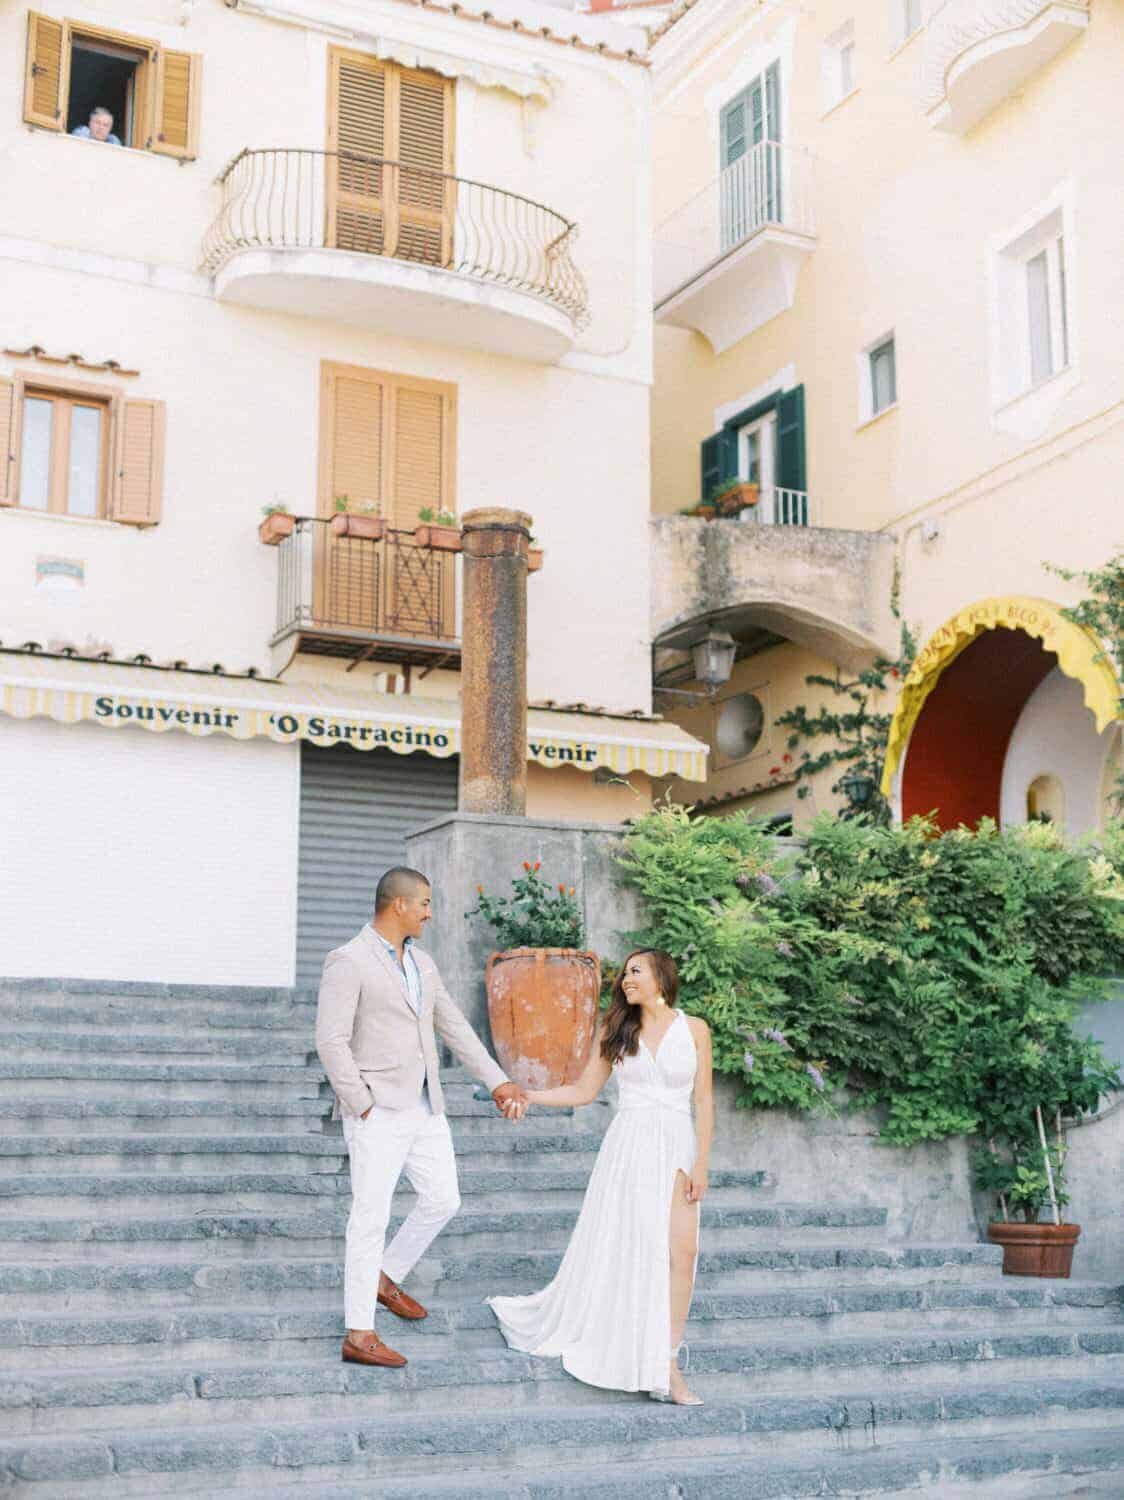 Positano-engagement-session-Amalfi-coast-Italy-by-Julia-Kaptelova_Photography-011